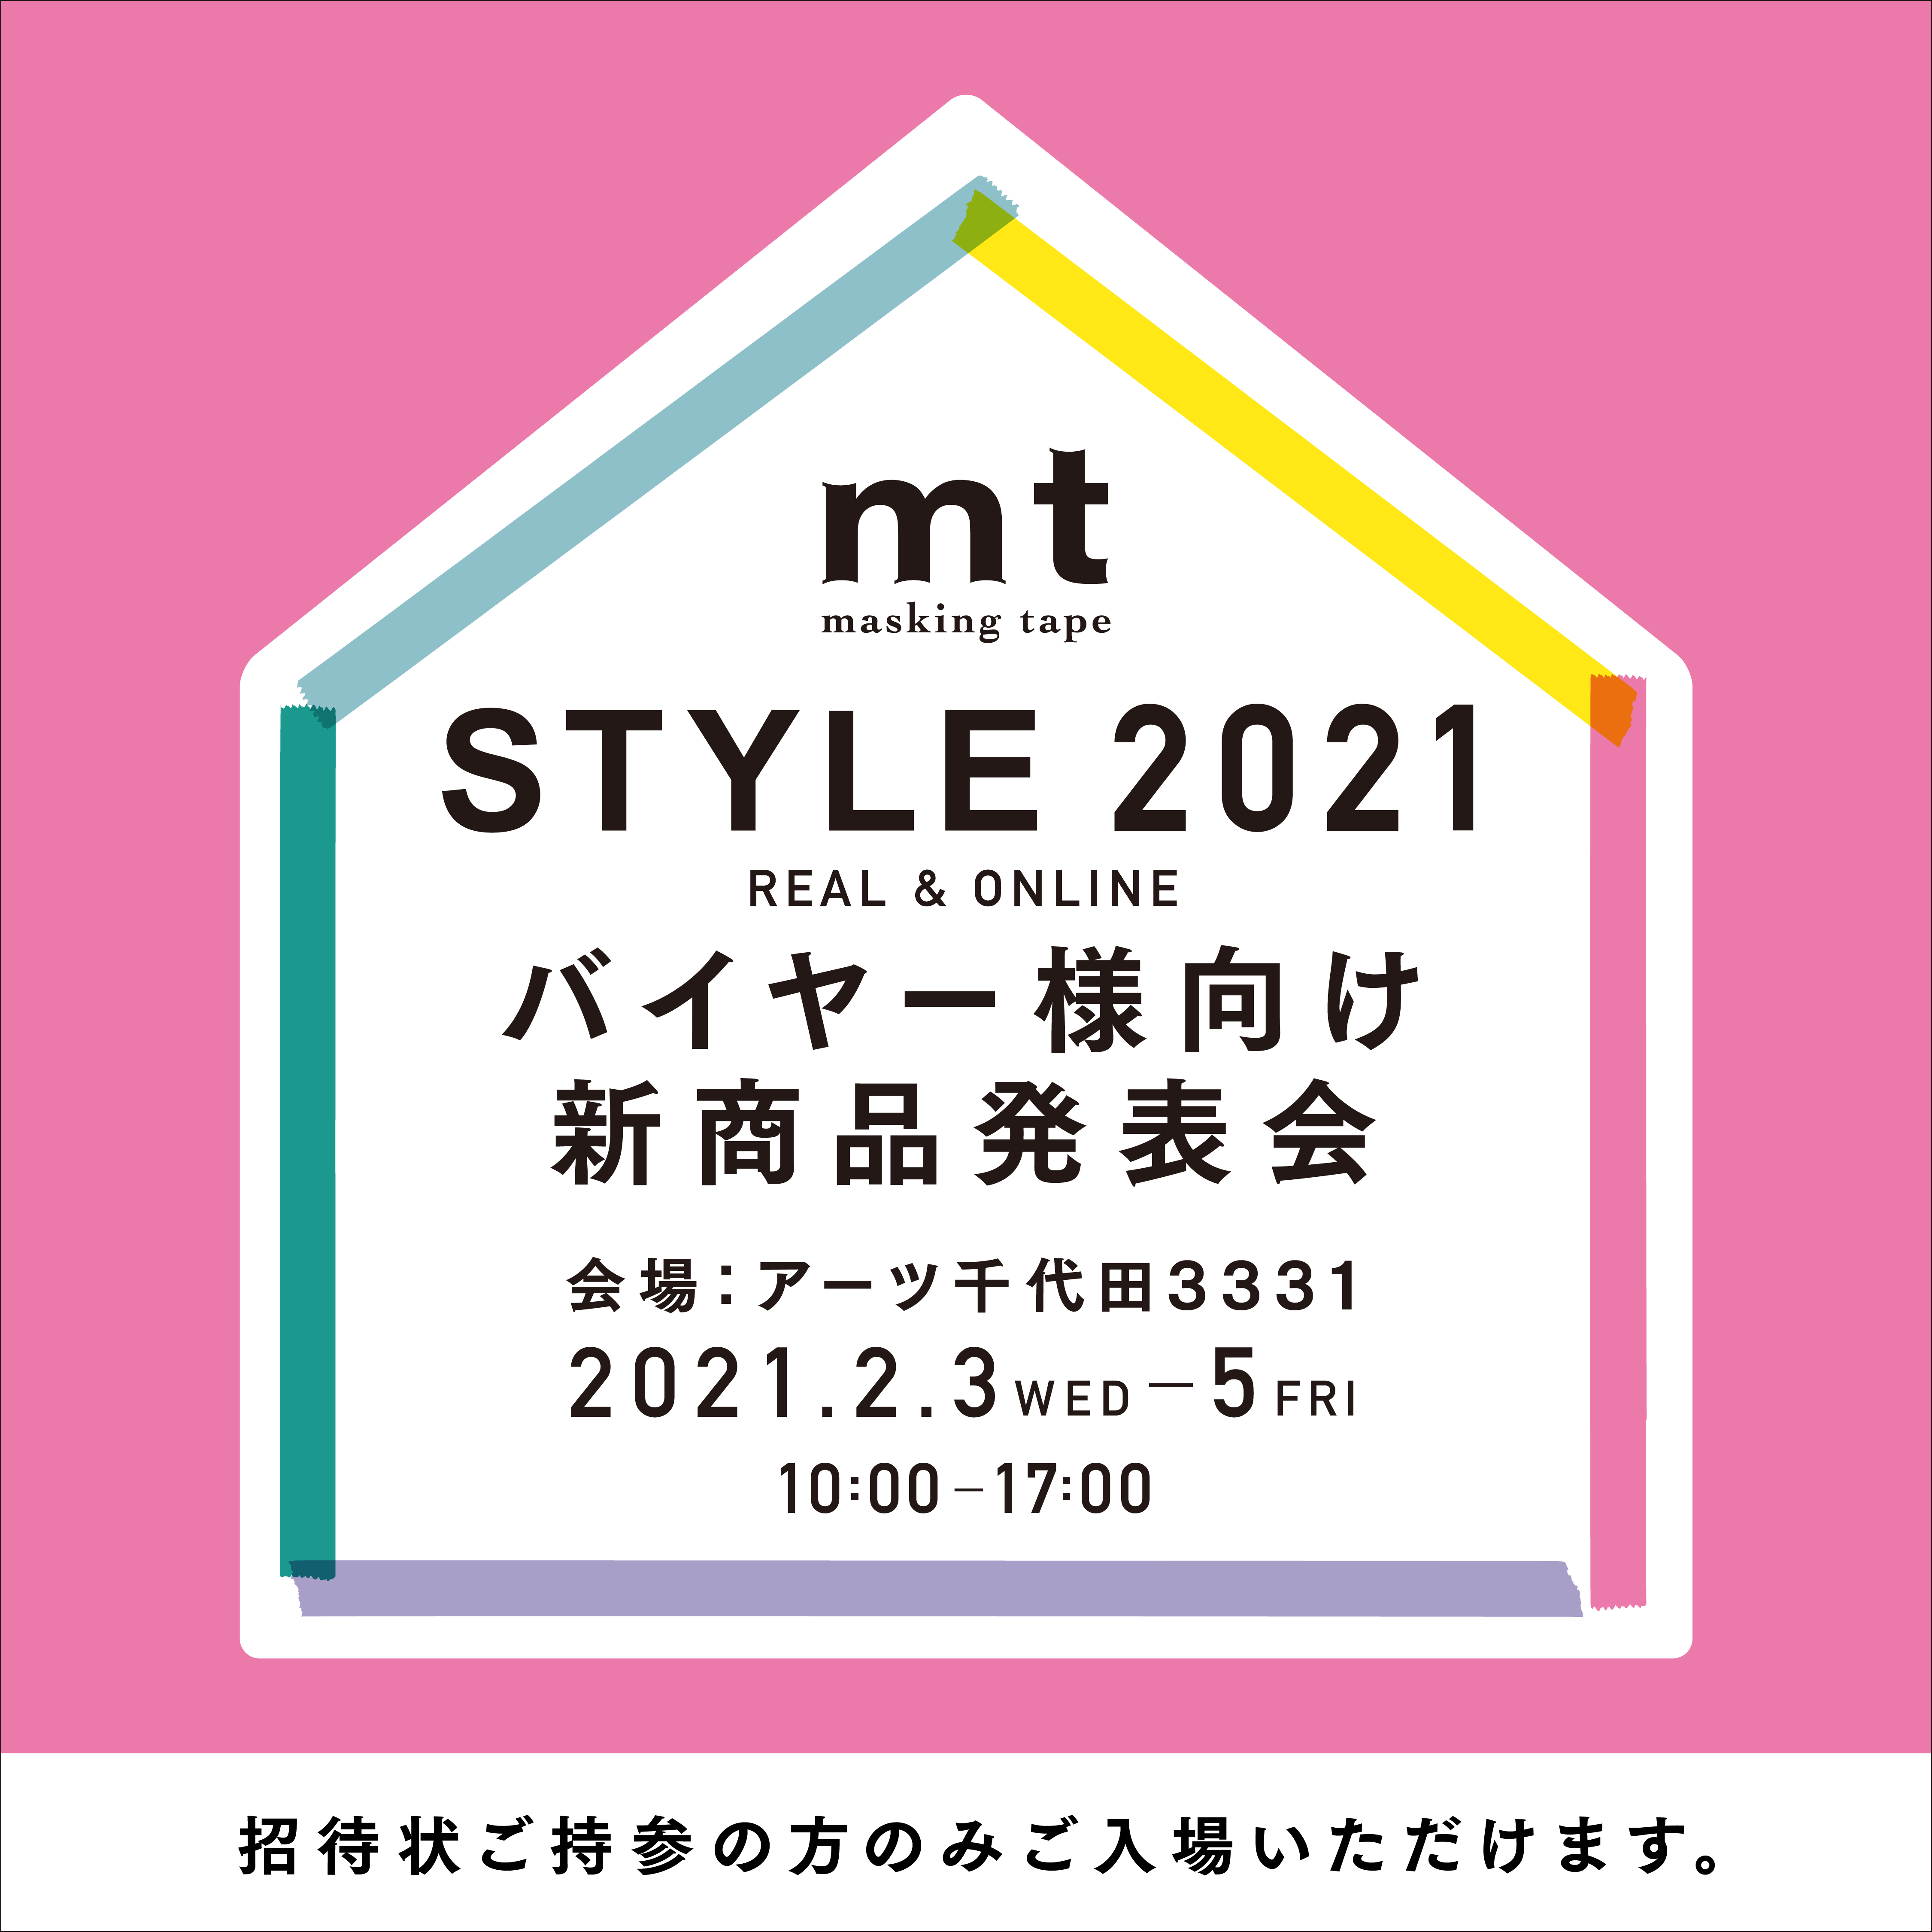 【追伸】mt STYLE 2021　バイヤー様DM登録者様向け新商品発表会について